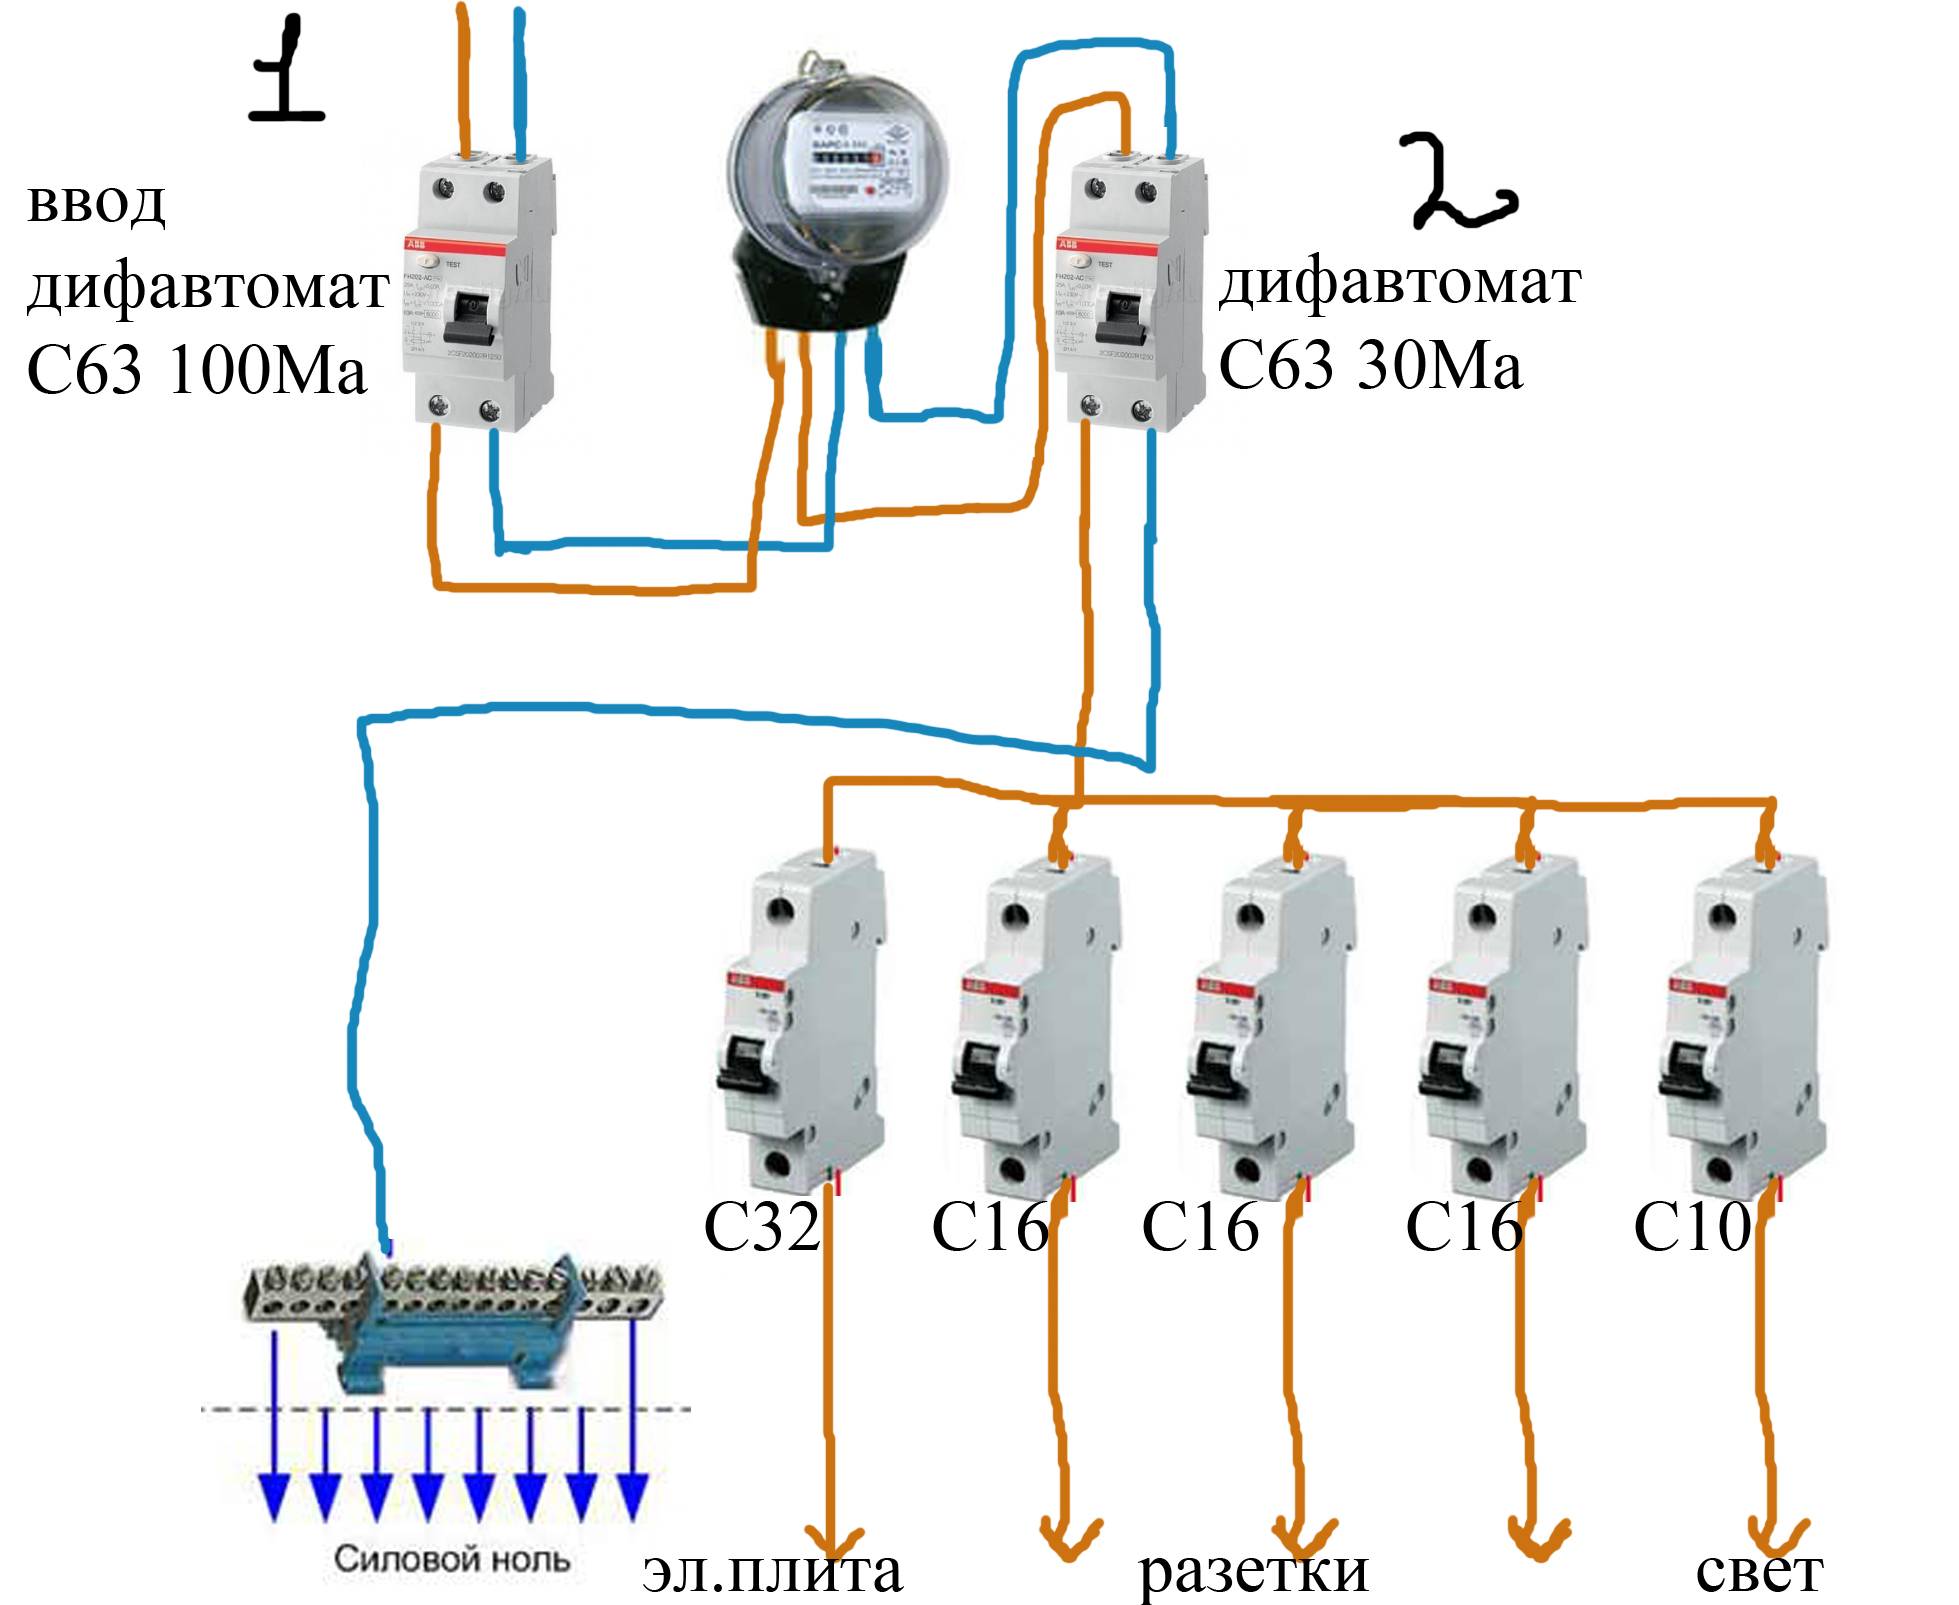 Подключение дифавтомата в щитке после счетчика, схемы и правила для автоматов и узо